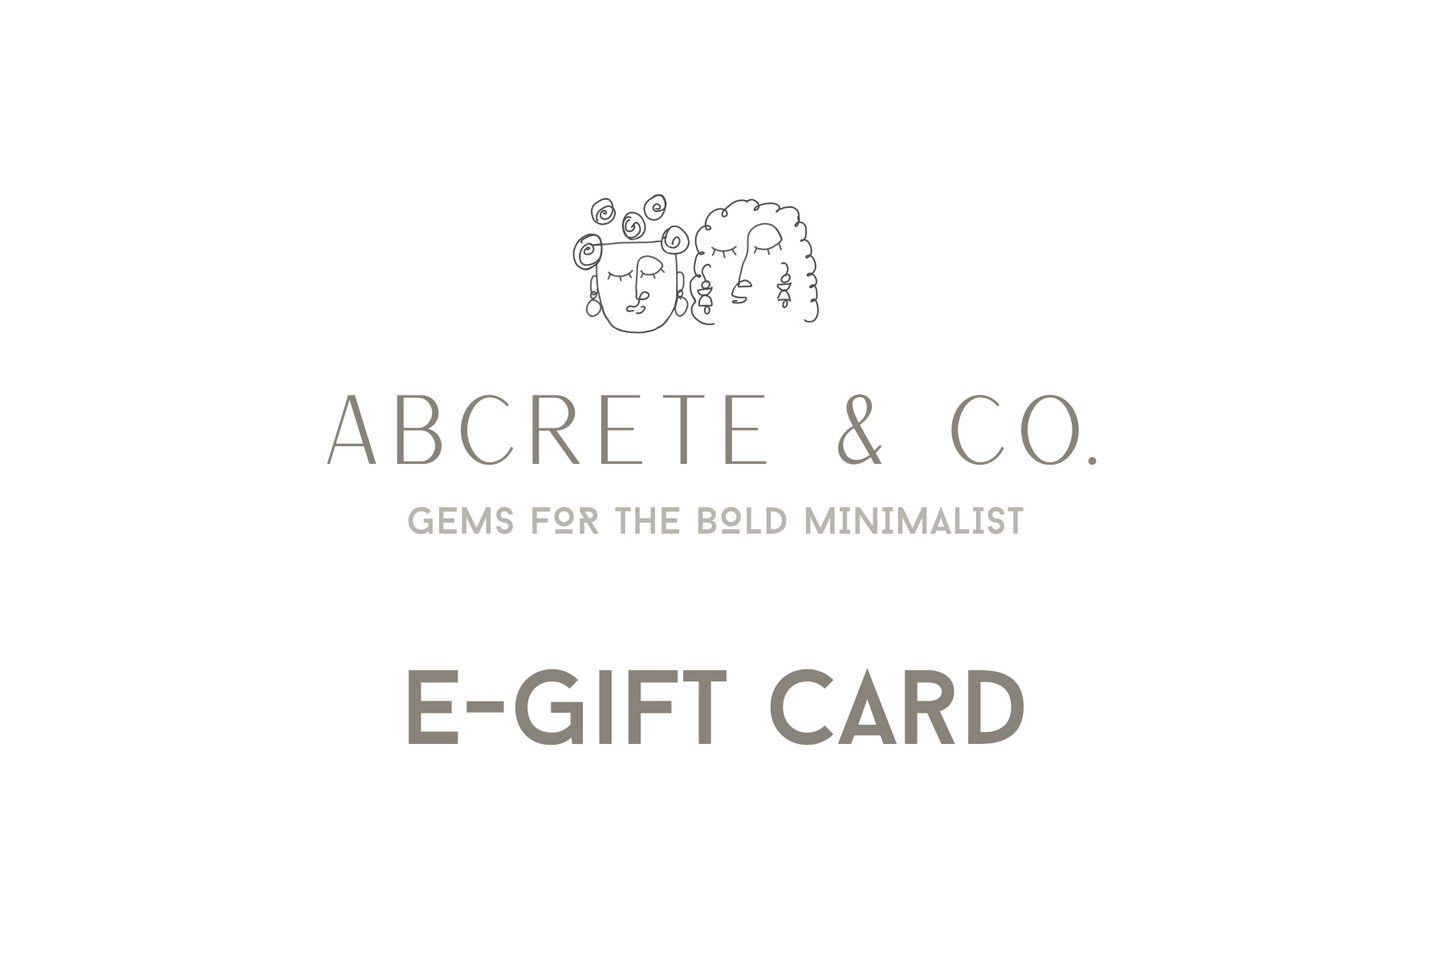 Abcrete & Co. E-Gift Card